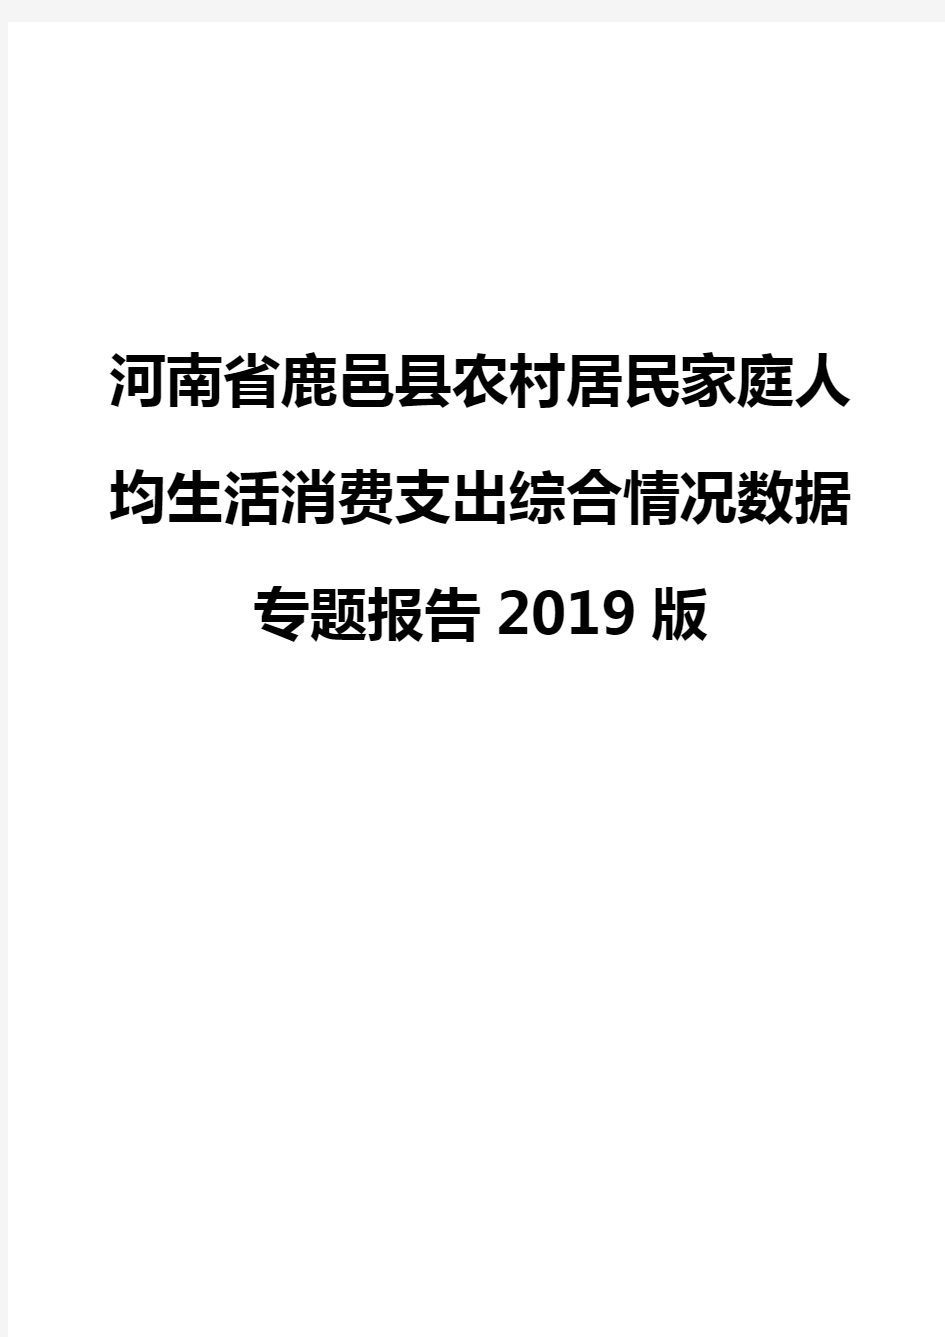 河南省鹿邑县农村居民家庭人均生活消费支出综合情况数据专题报告2019版